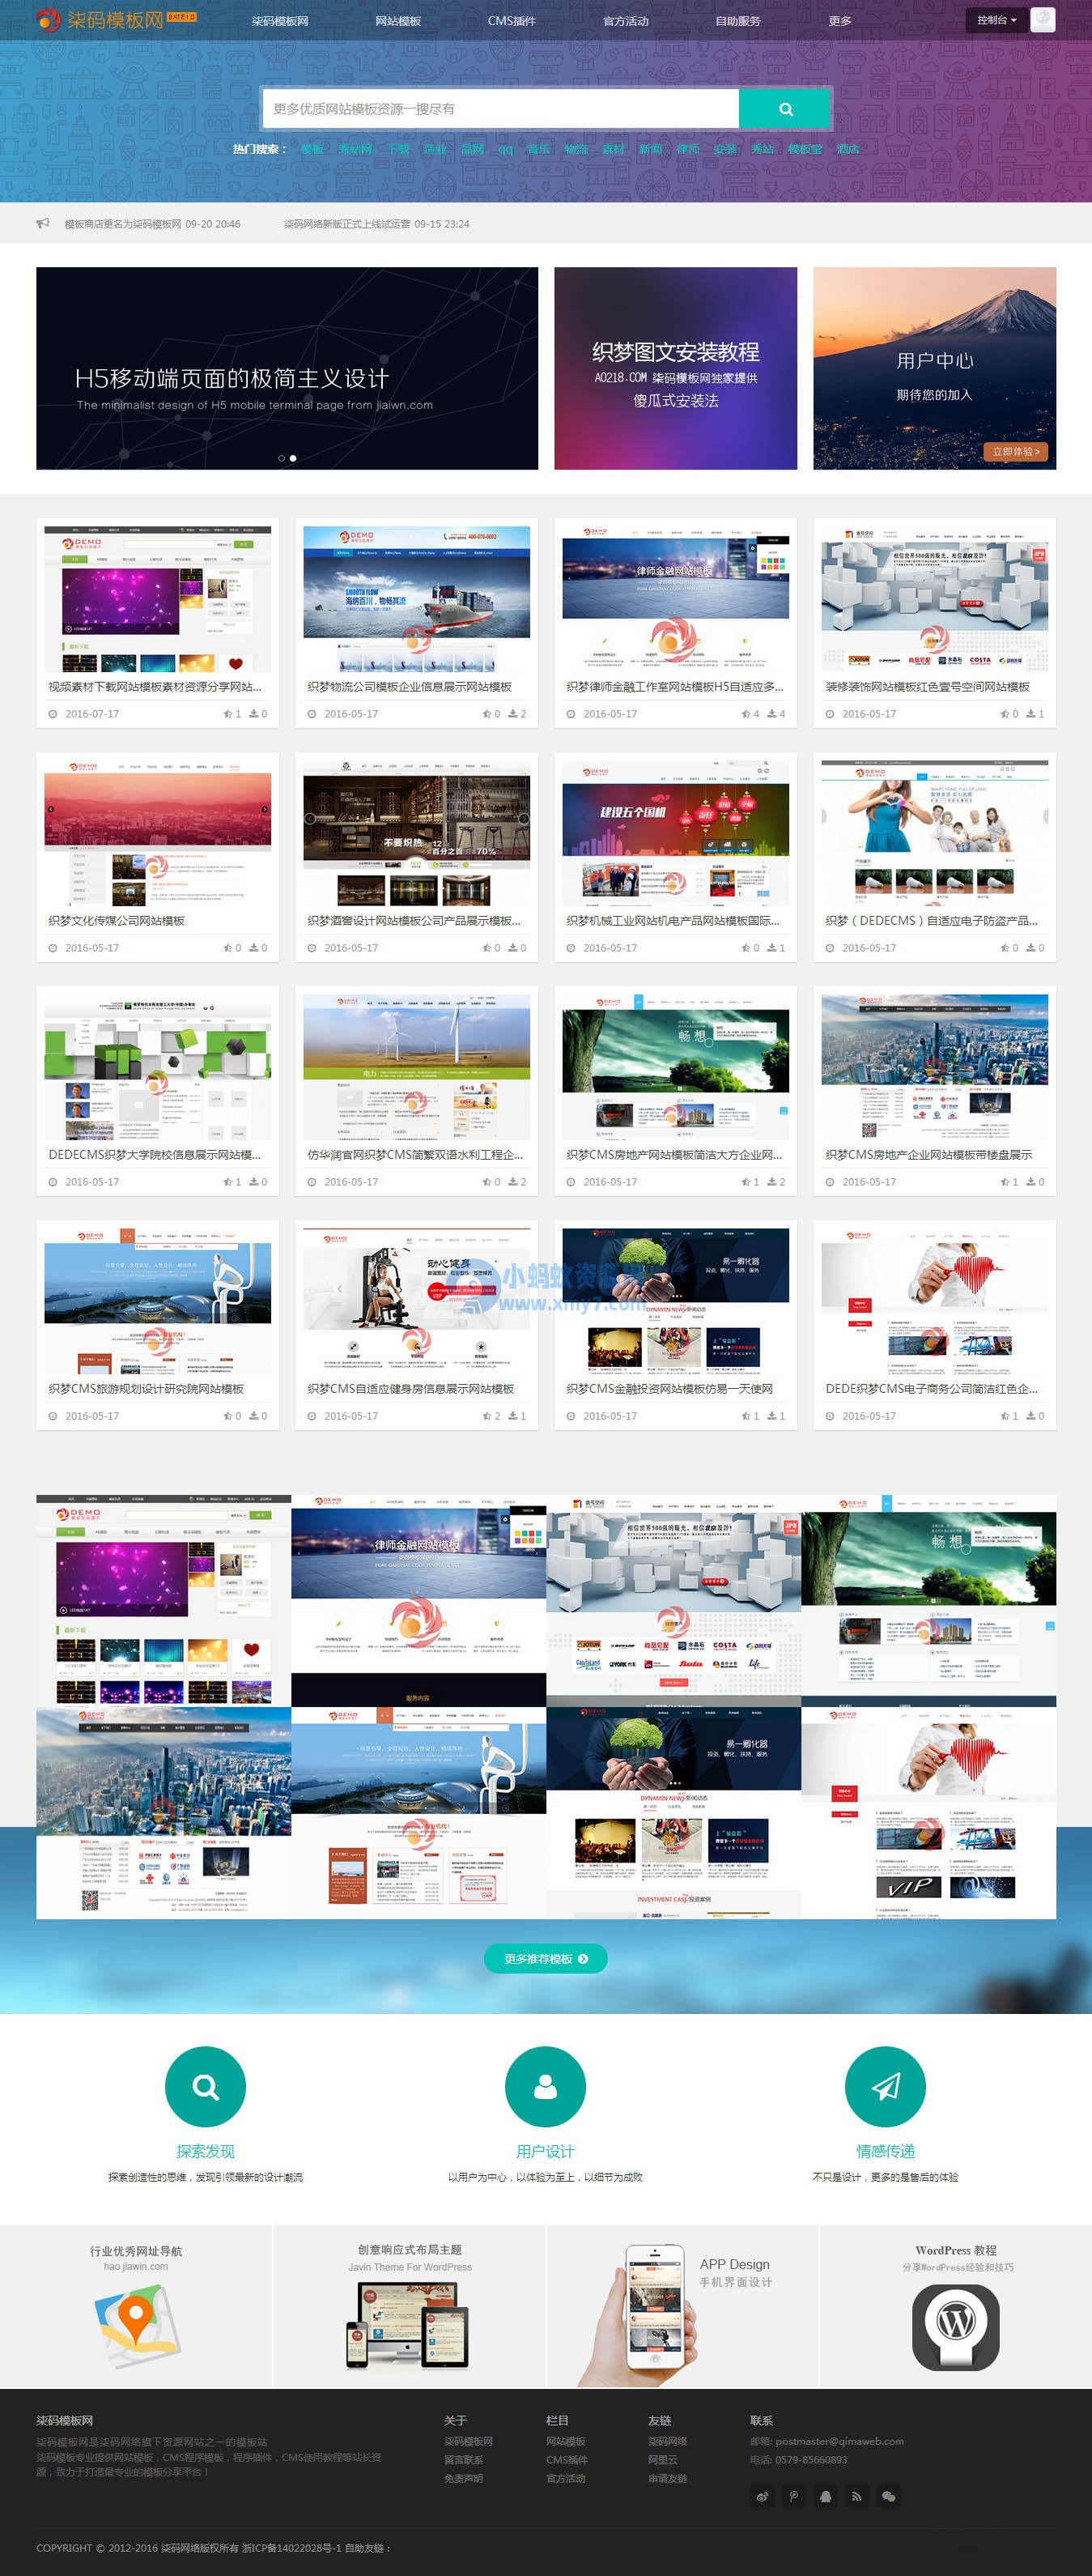 织梦HTML5响应式网页模板图片素材下载站（带会员中心）